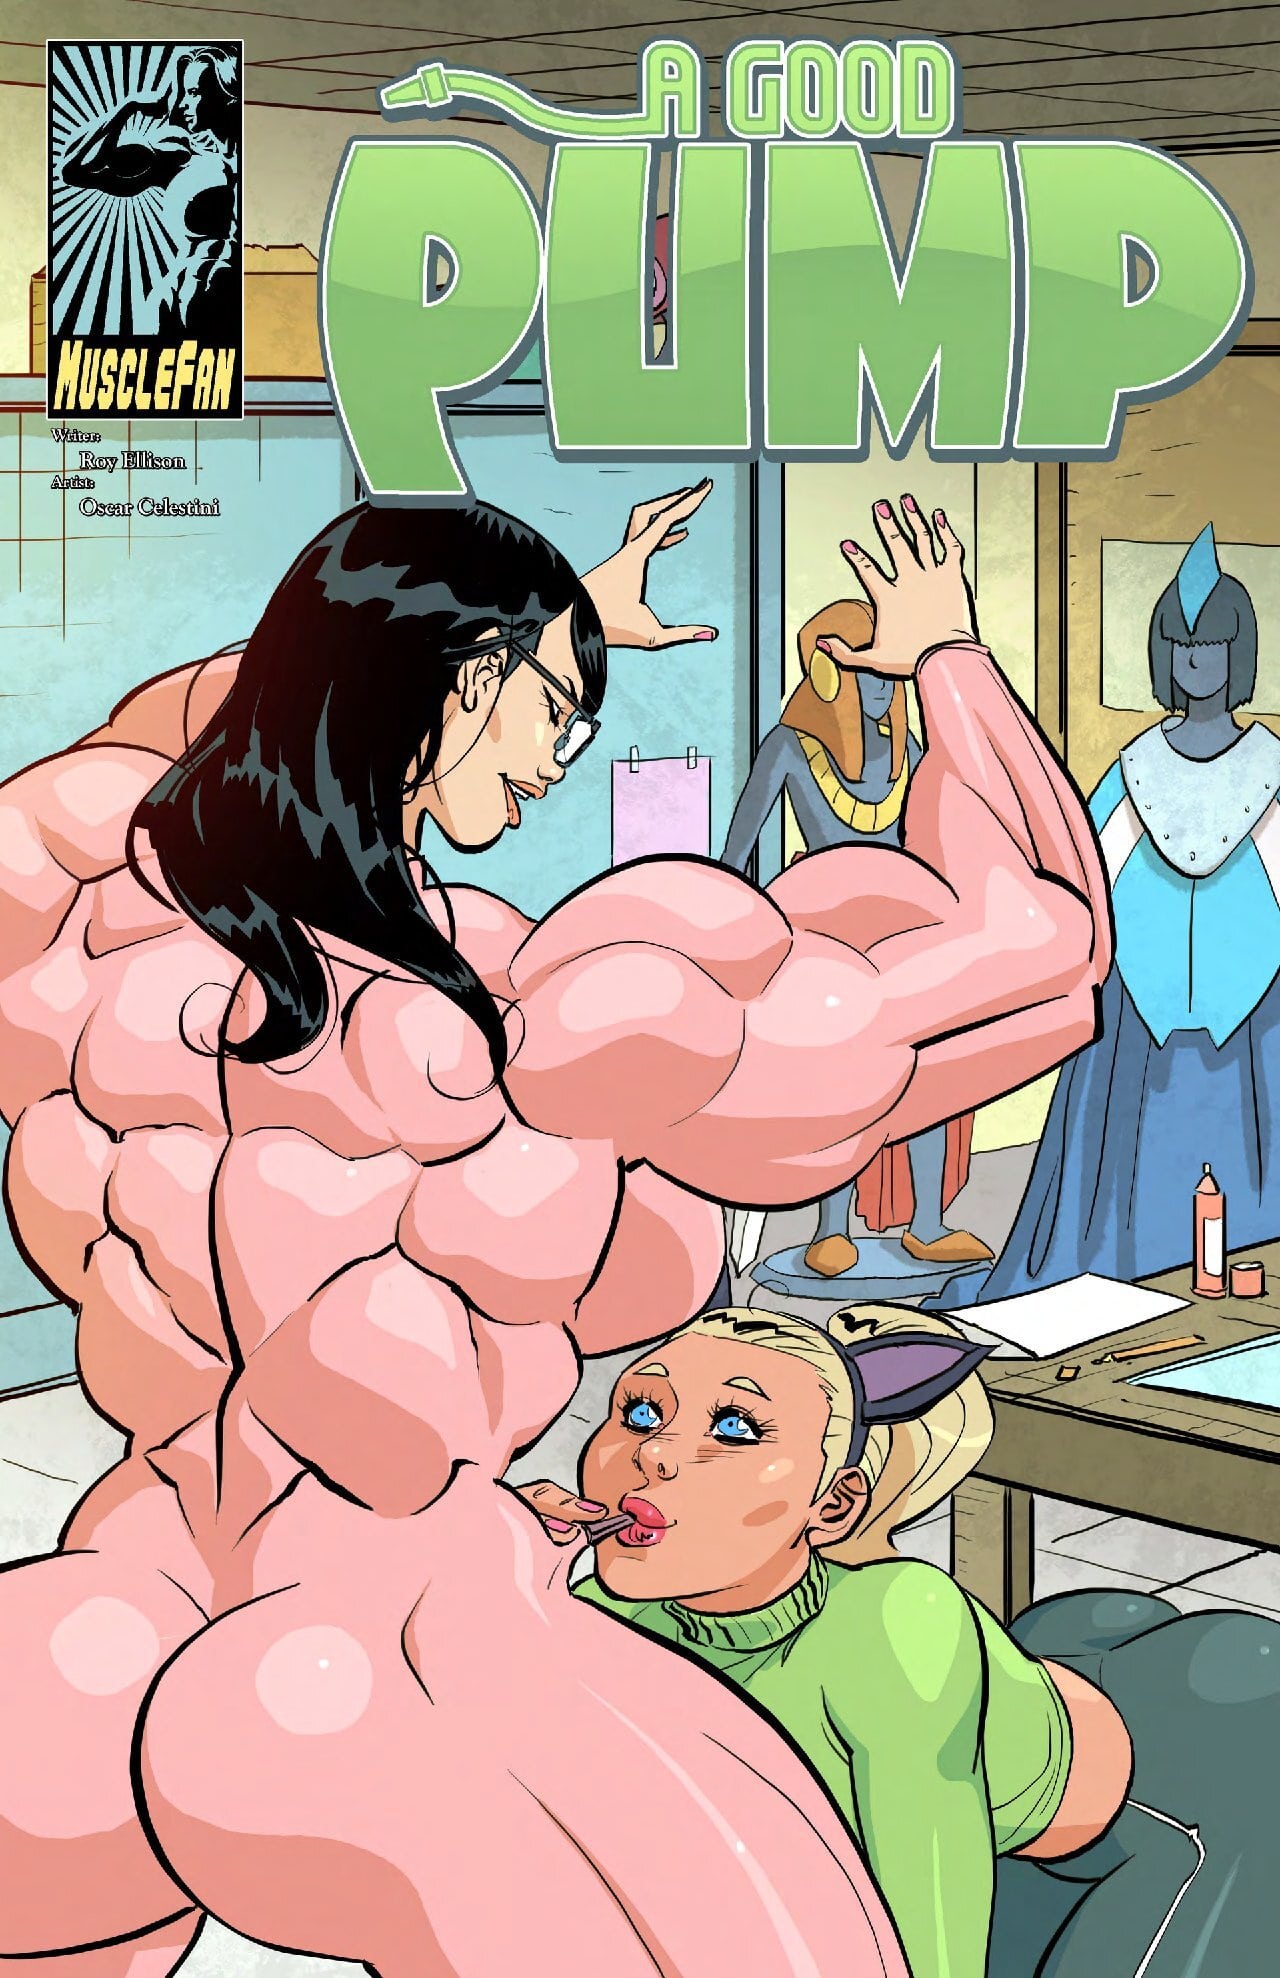 Muscle fan porn comics